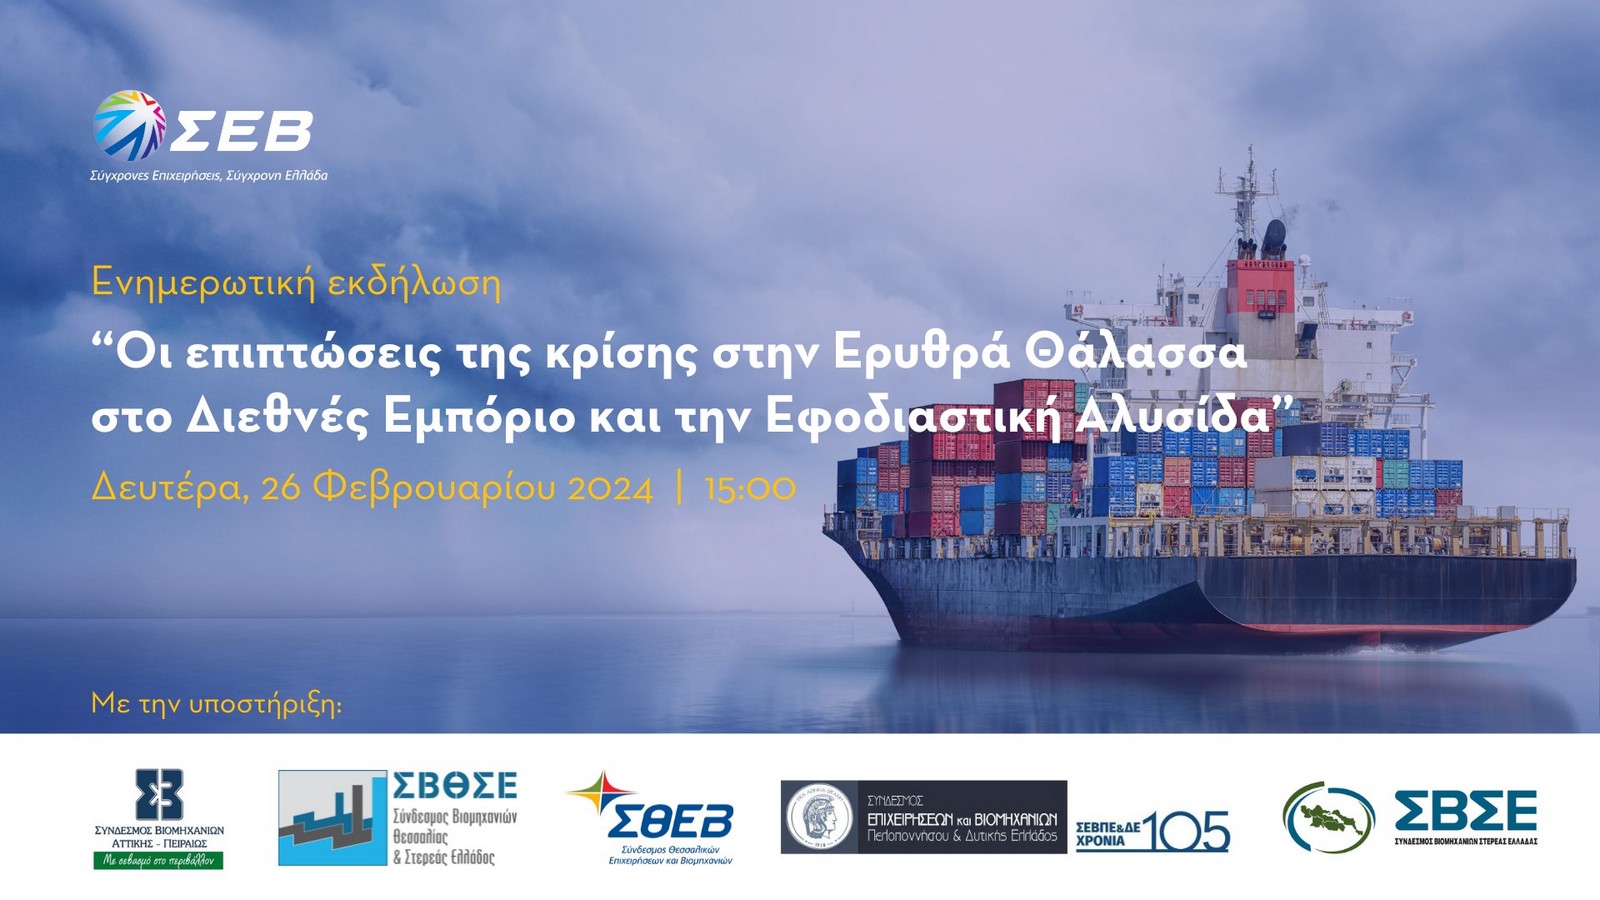 Ερυθρά Θάλασσα – ΣΕΒ: “Καμπανάκι” για τις επιπτώσεις στις ελληνικές επιχειρήσεις – Ενημερωτική μερίδα